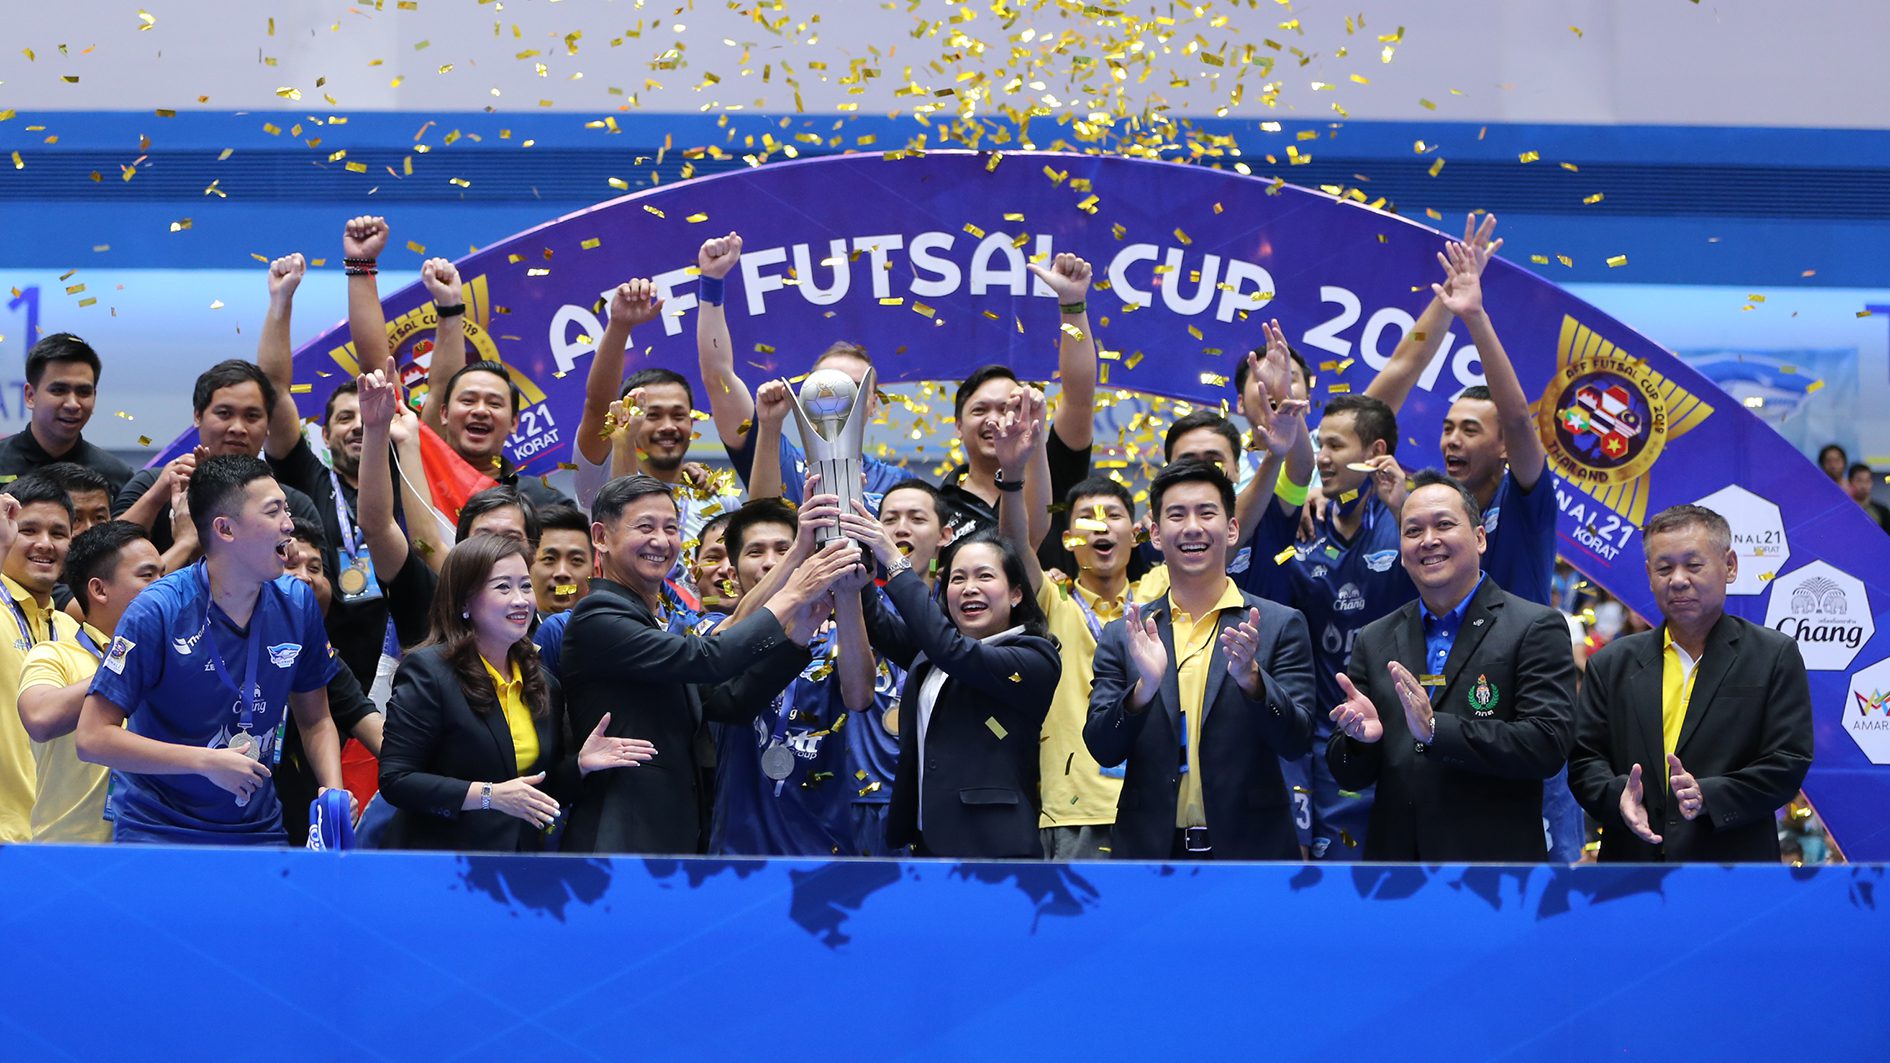 บลูเวฟ ชลบุรี เถลิงแชมป์ นัดชิงกดไป 9 – 1 ศึก AFF FUTSAL CUP 2019